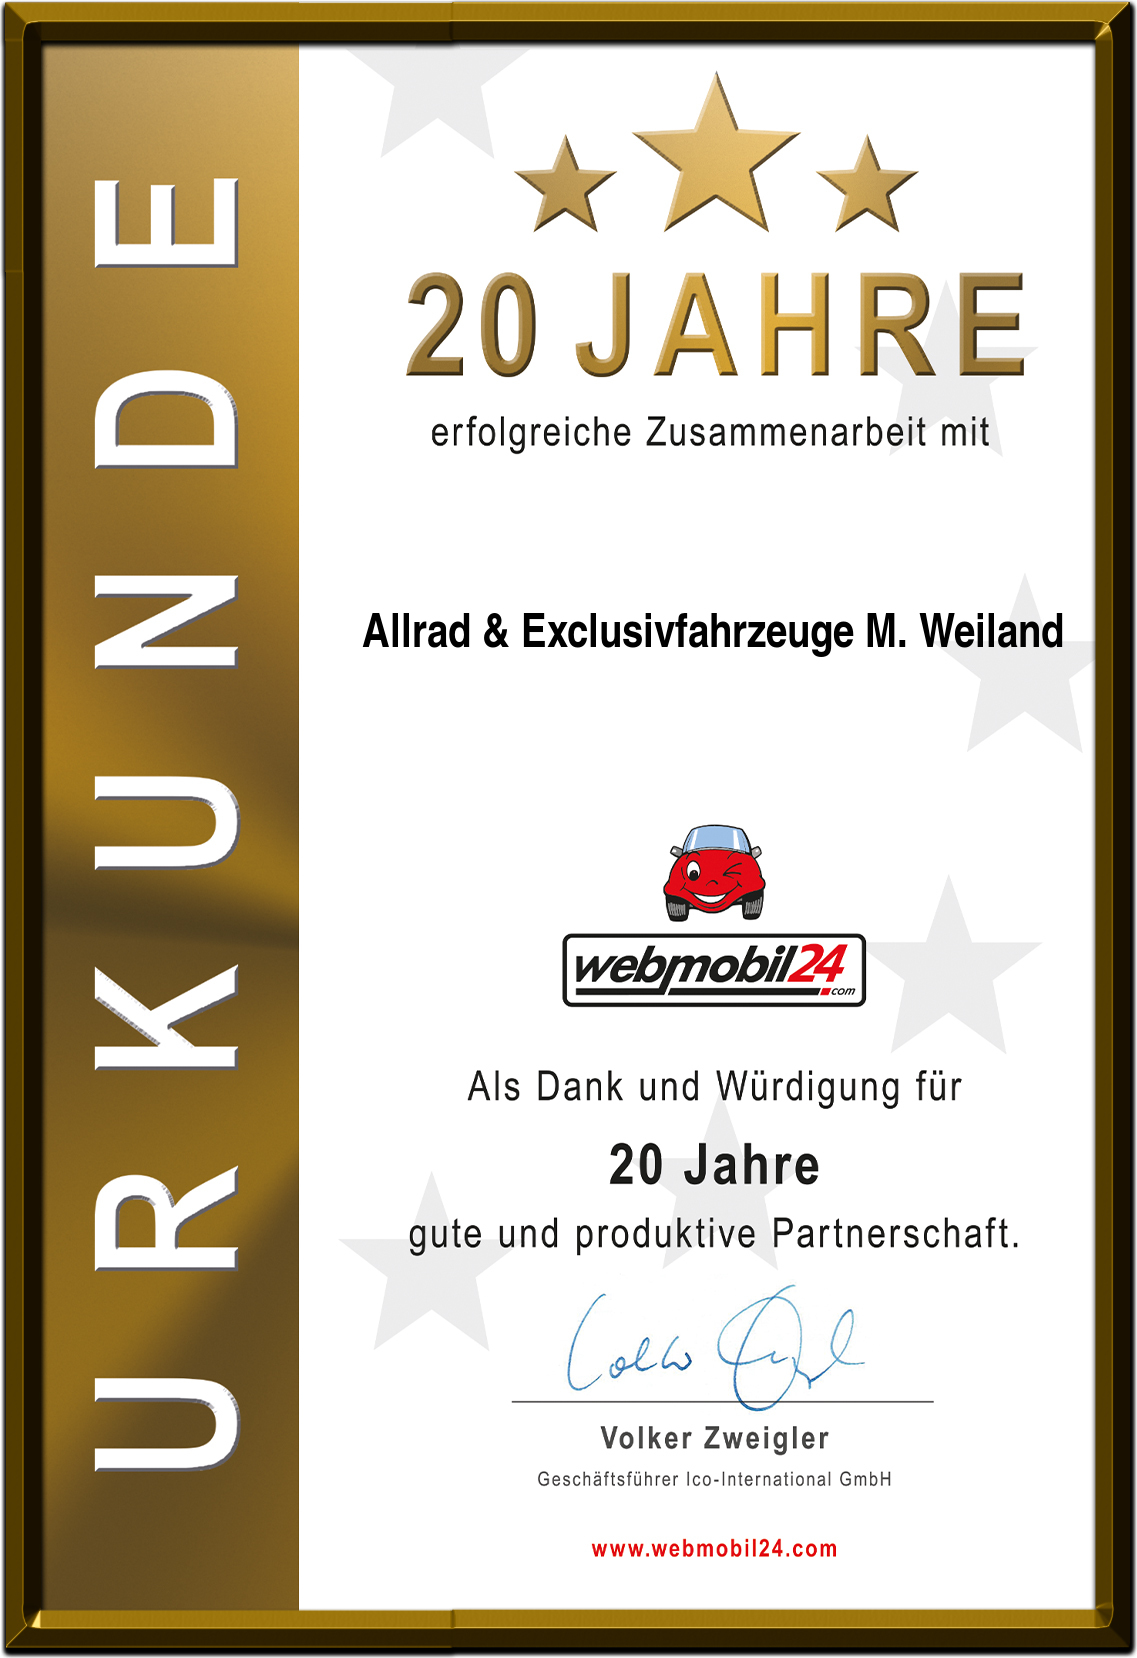 Allrad & Exclusivfahrzeuge M. Weiland